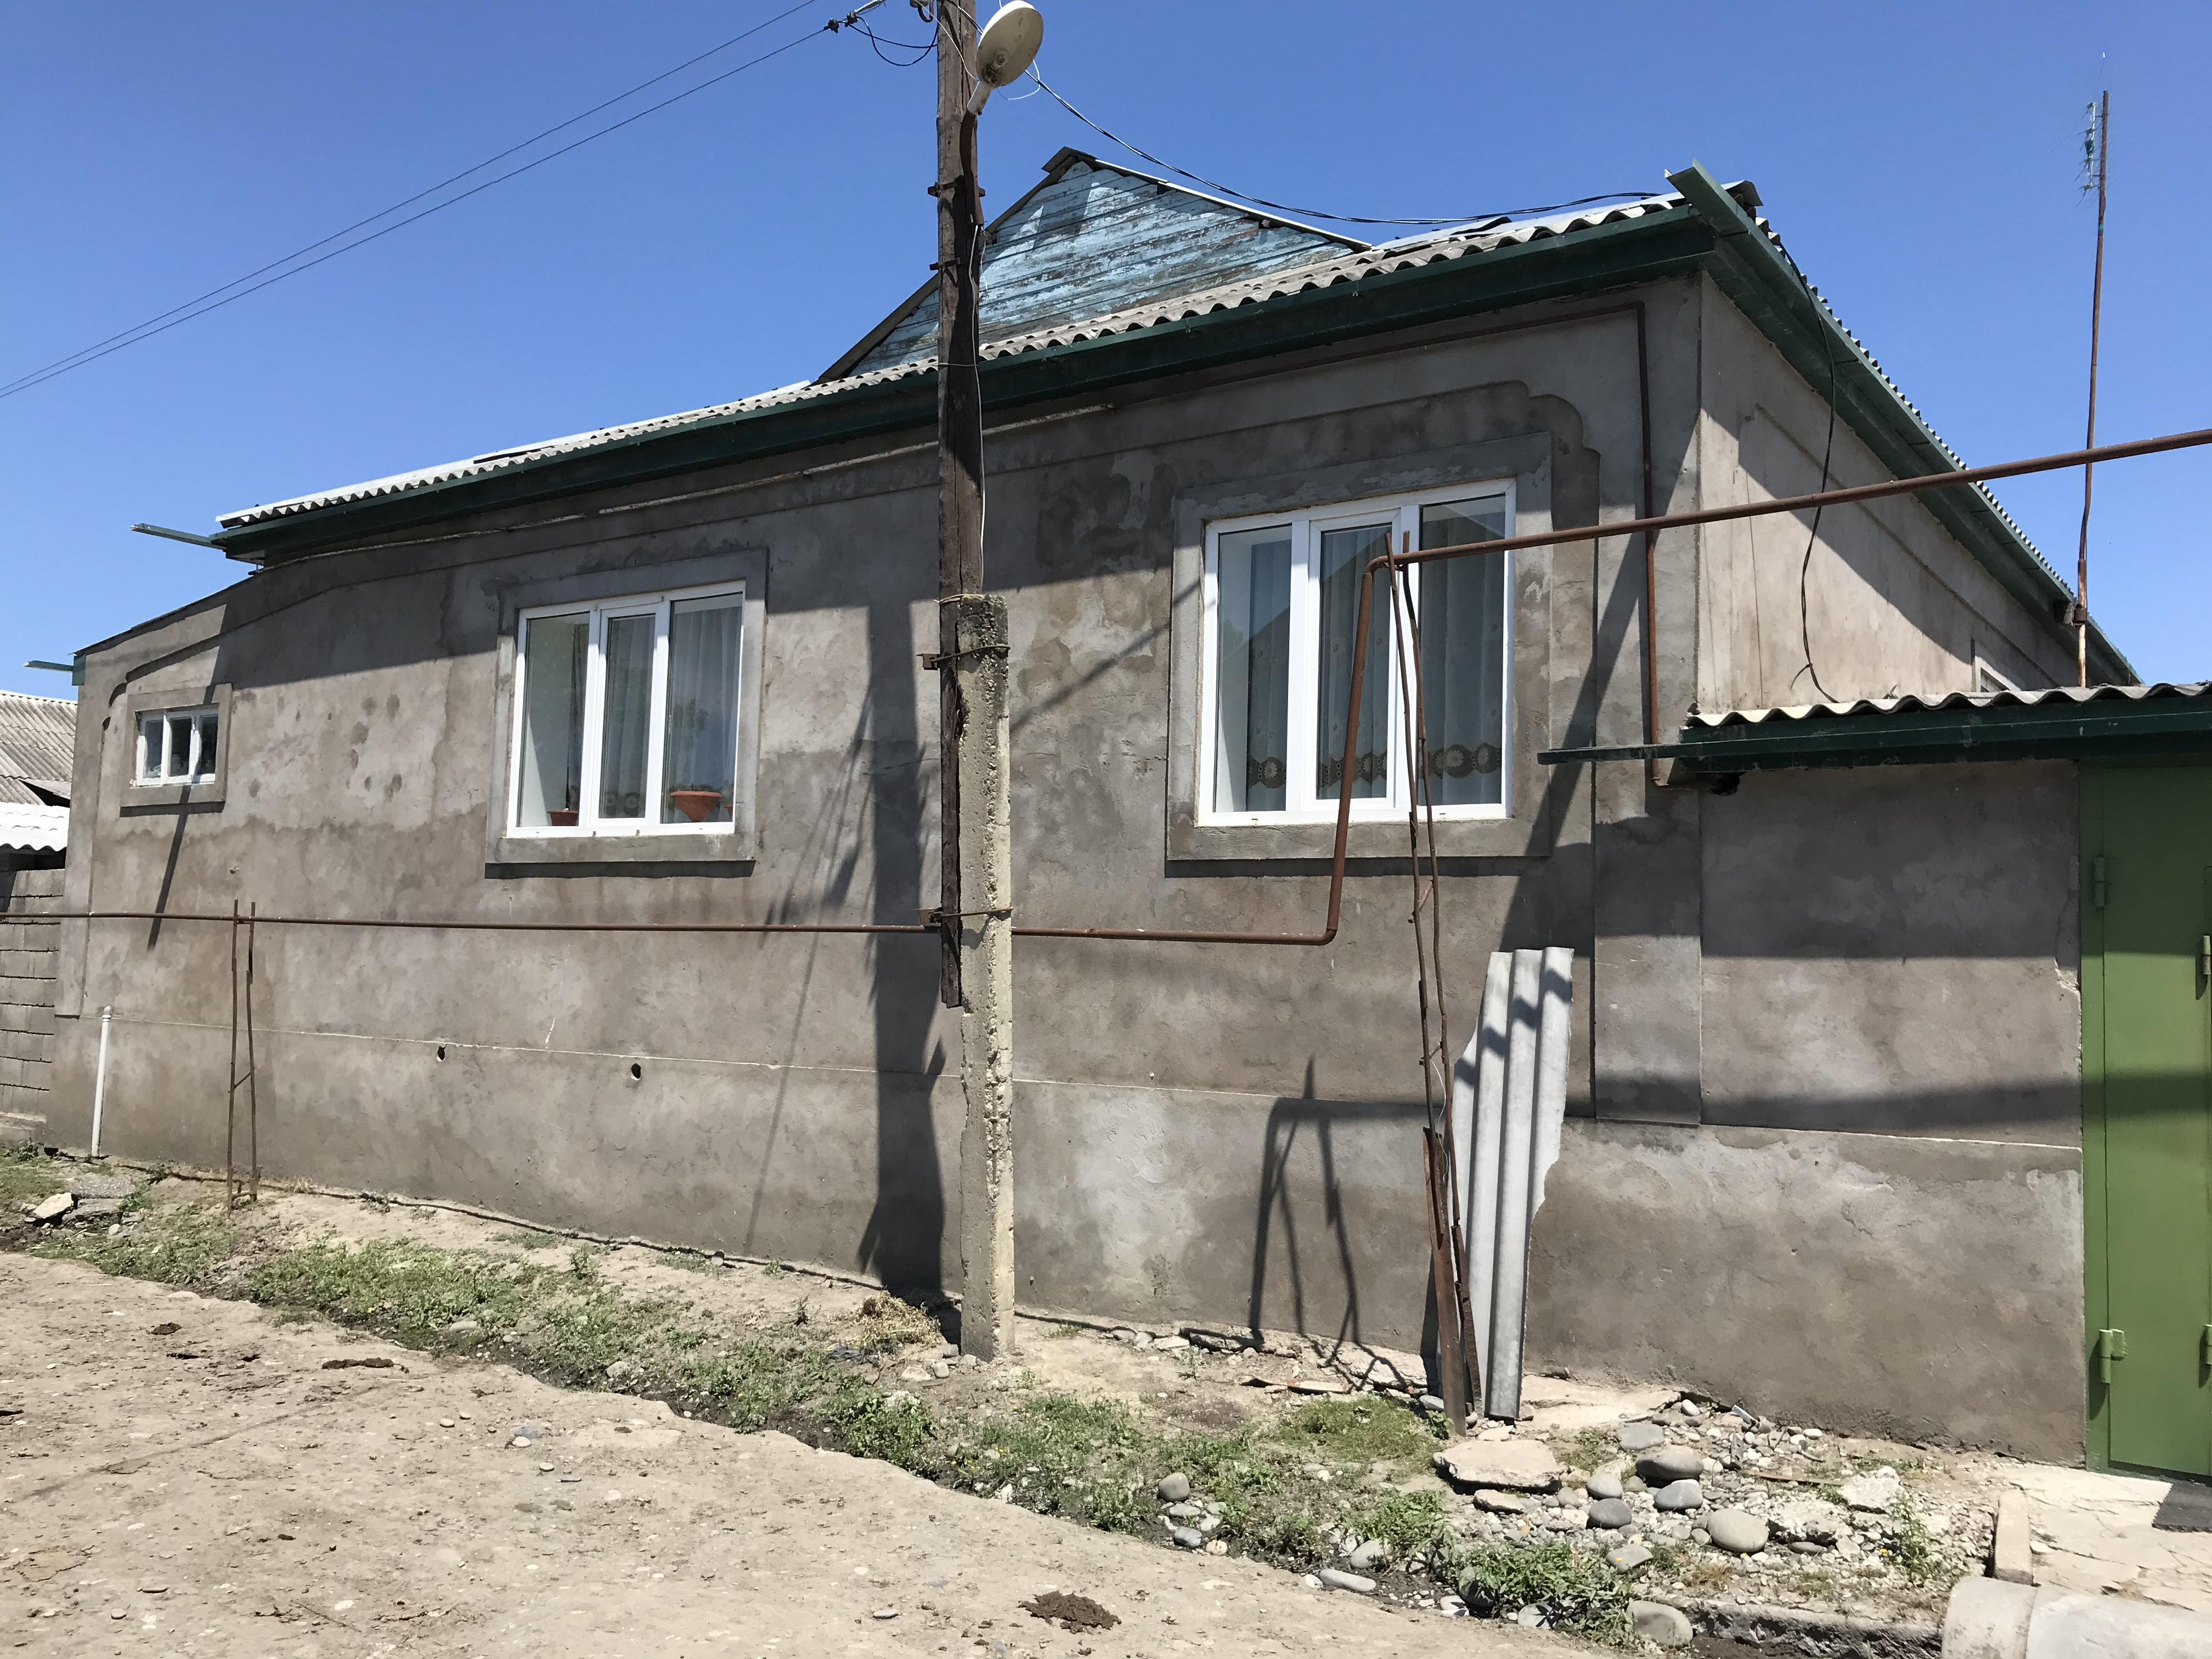 Один из домов, попавших под снос в селе Ново-Филя. Дагестан, 23 июня 2018 года. Фото Патимат Махмудовой для "Кавказского узла"